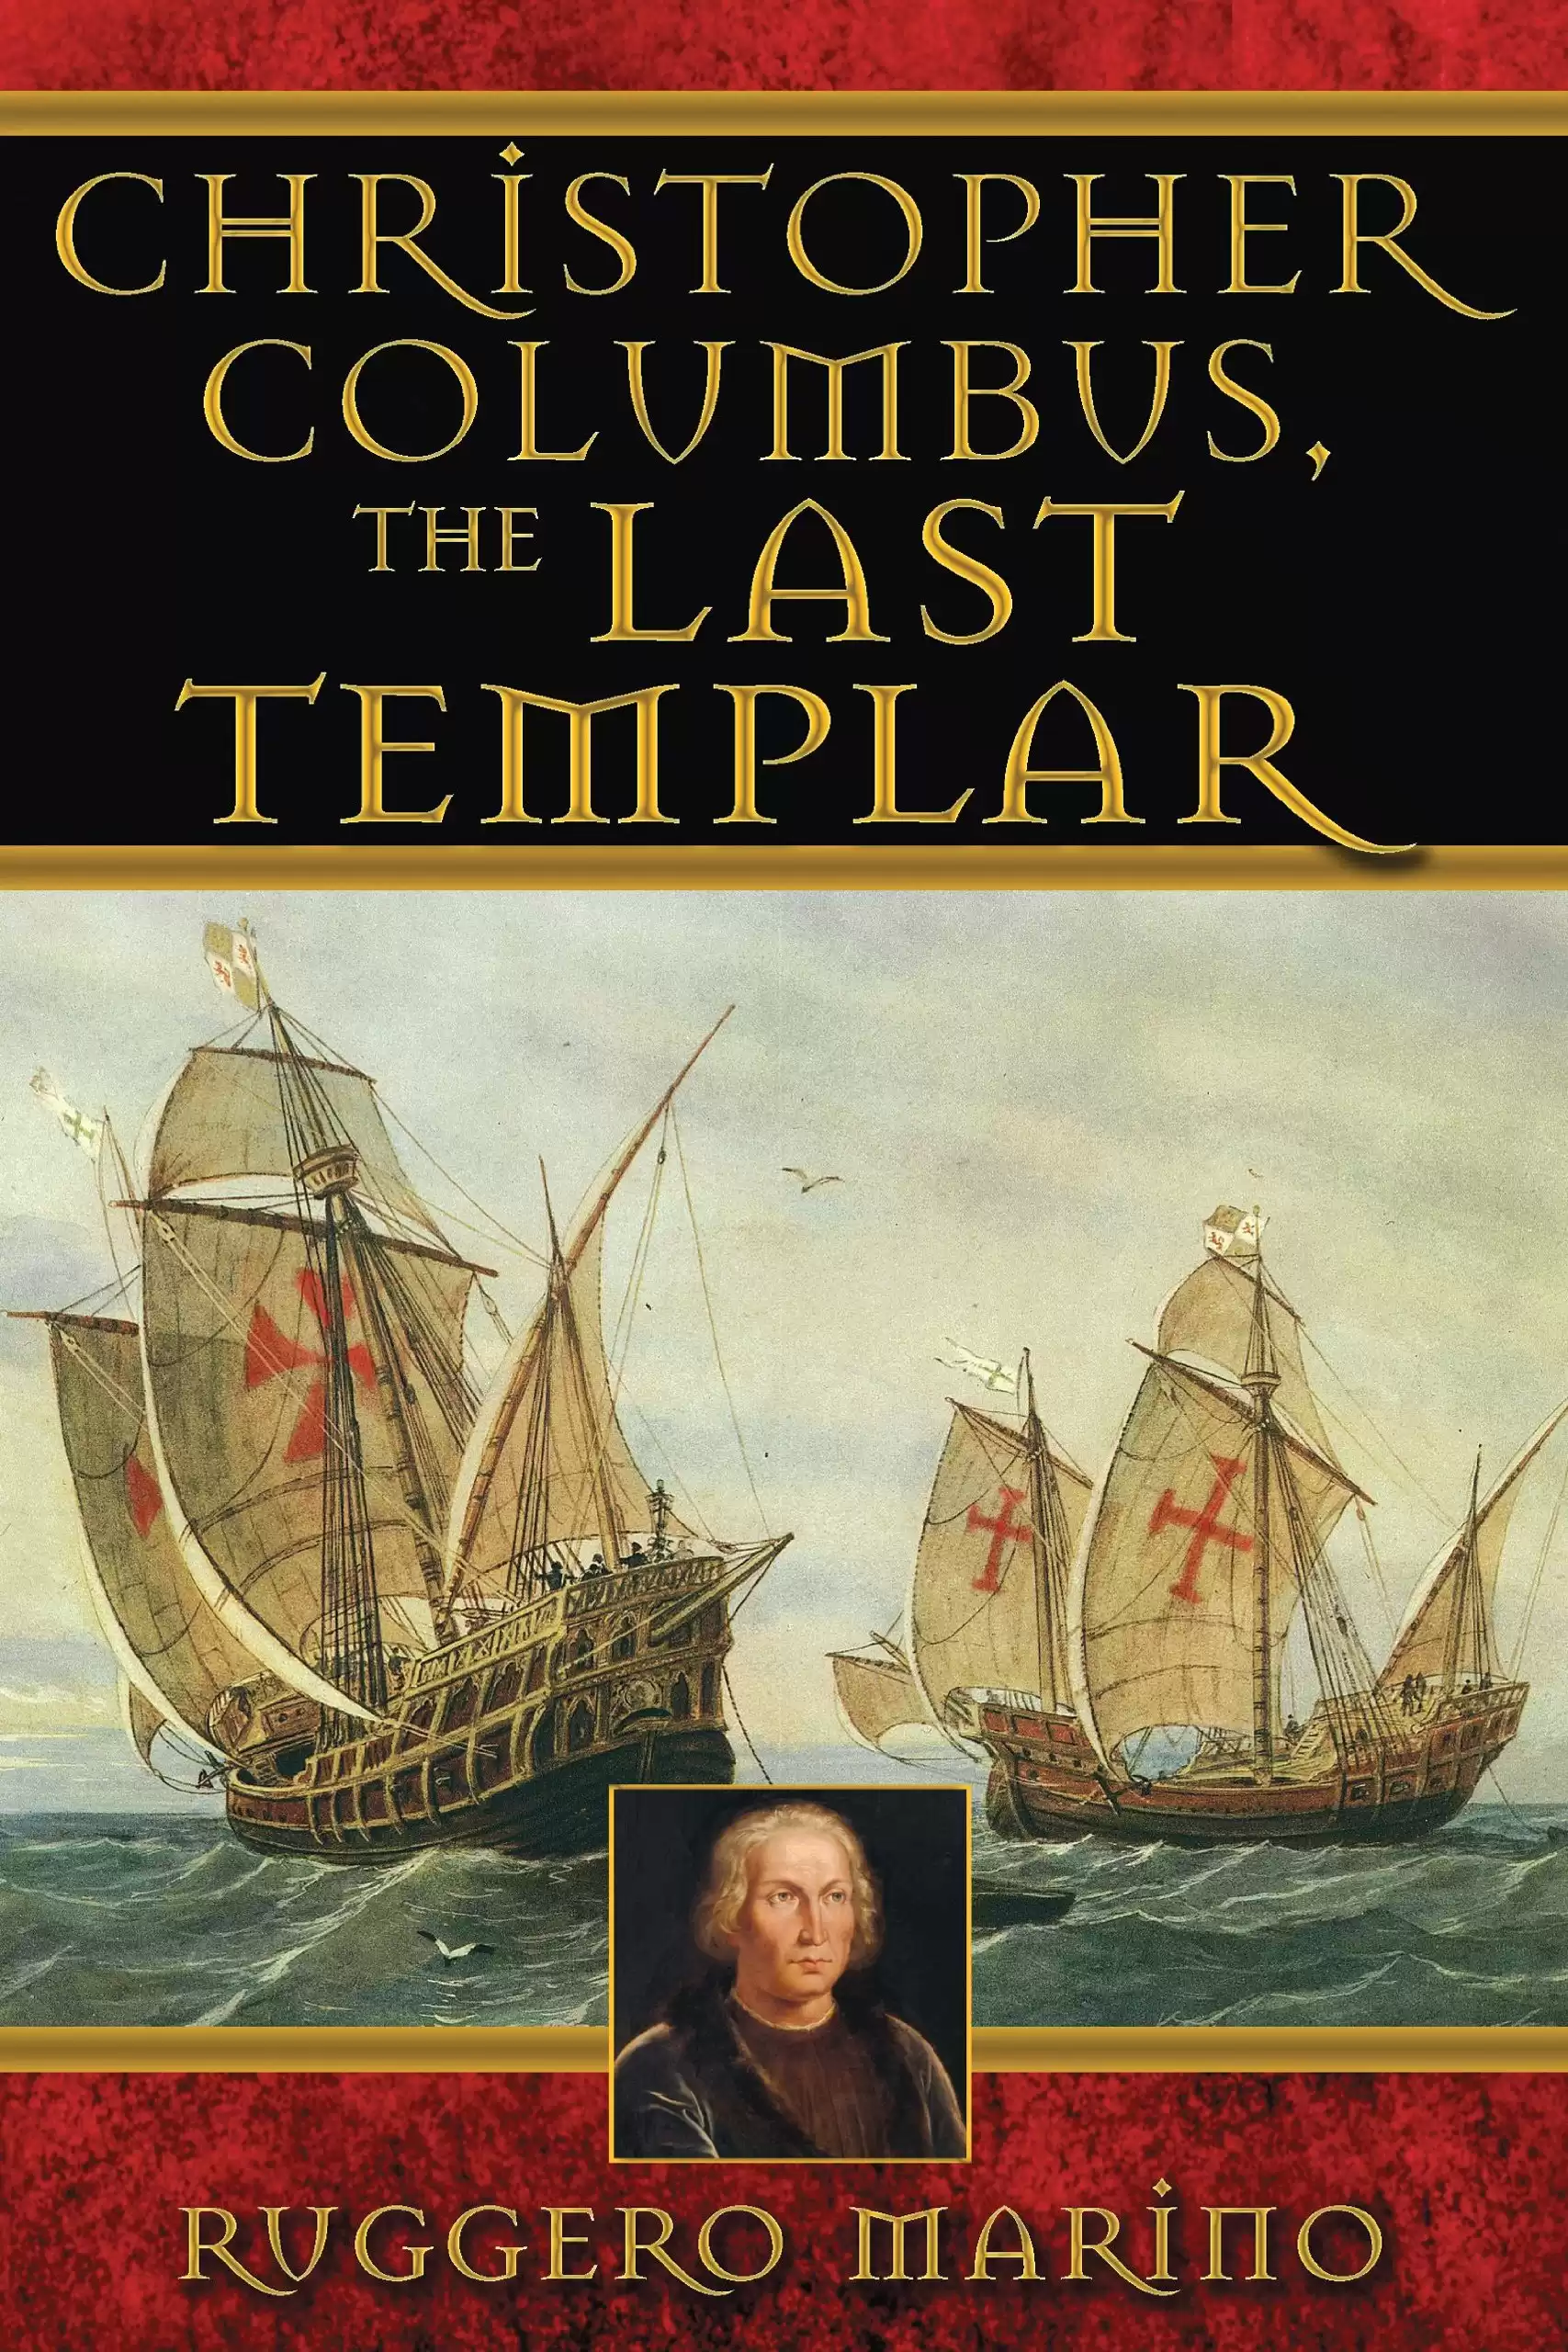 Copertina dell'edizione americana del libro Cristoforo Colombo l'ultimo dei templari